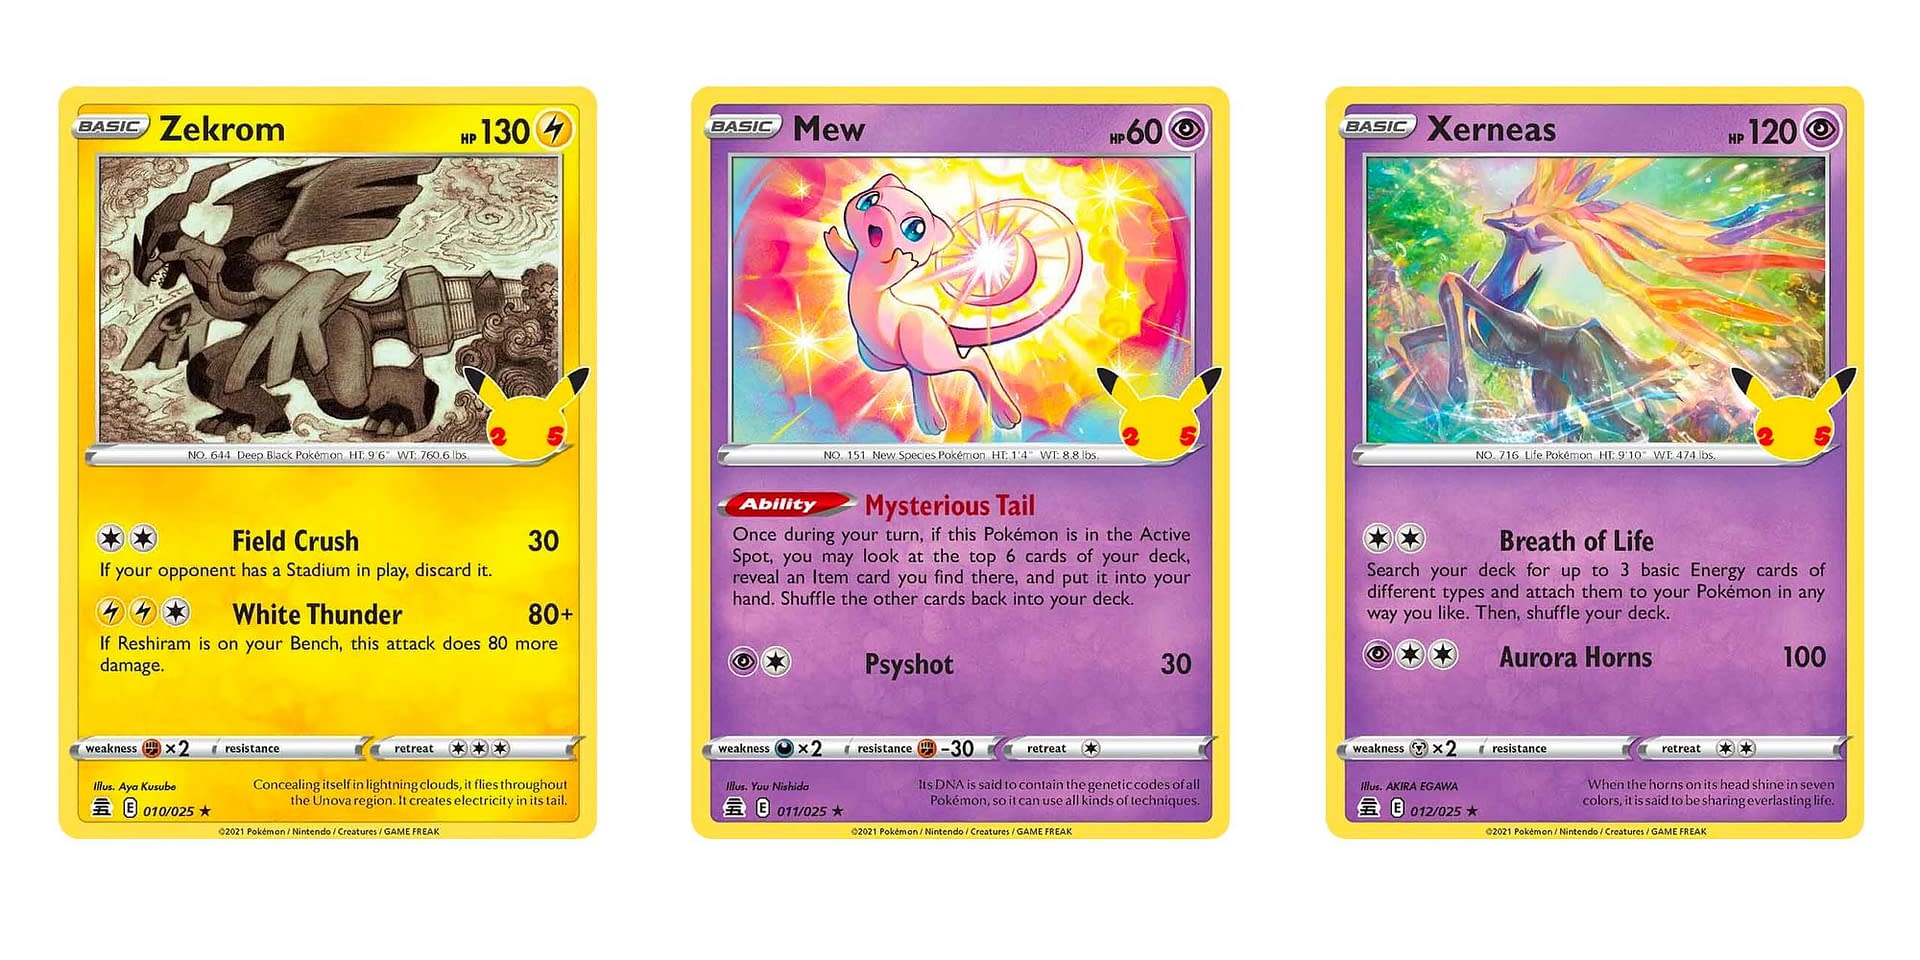 Mew - Celebrations Pokémon card 011/025